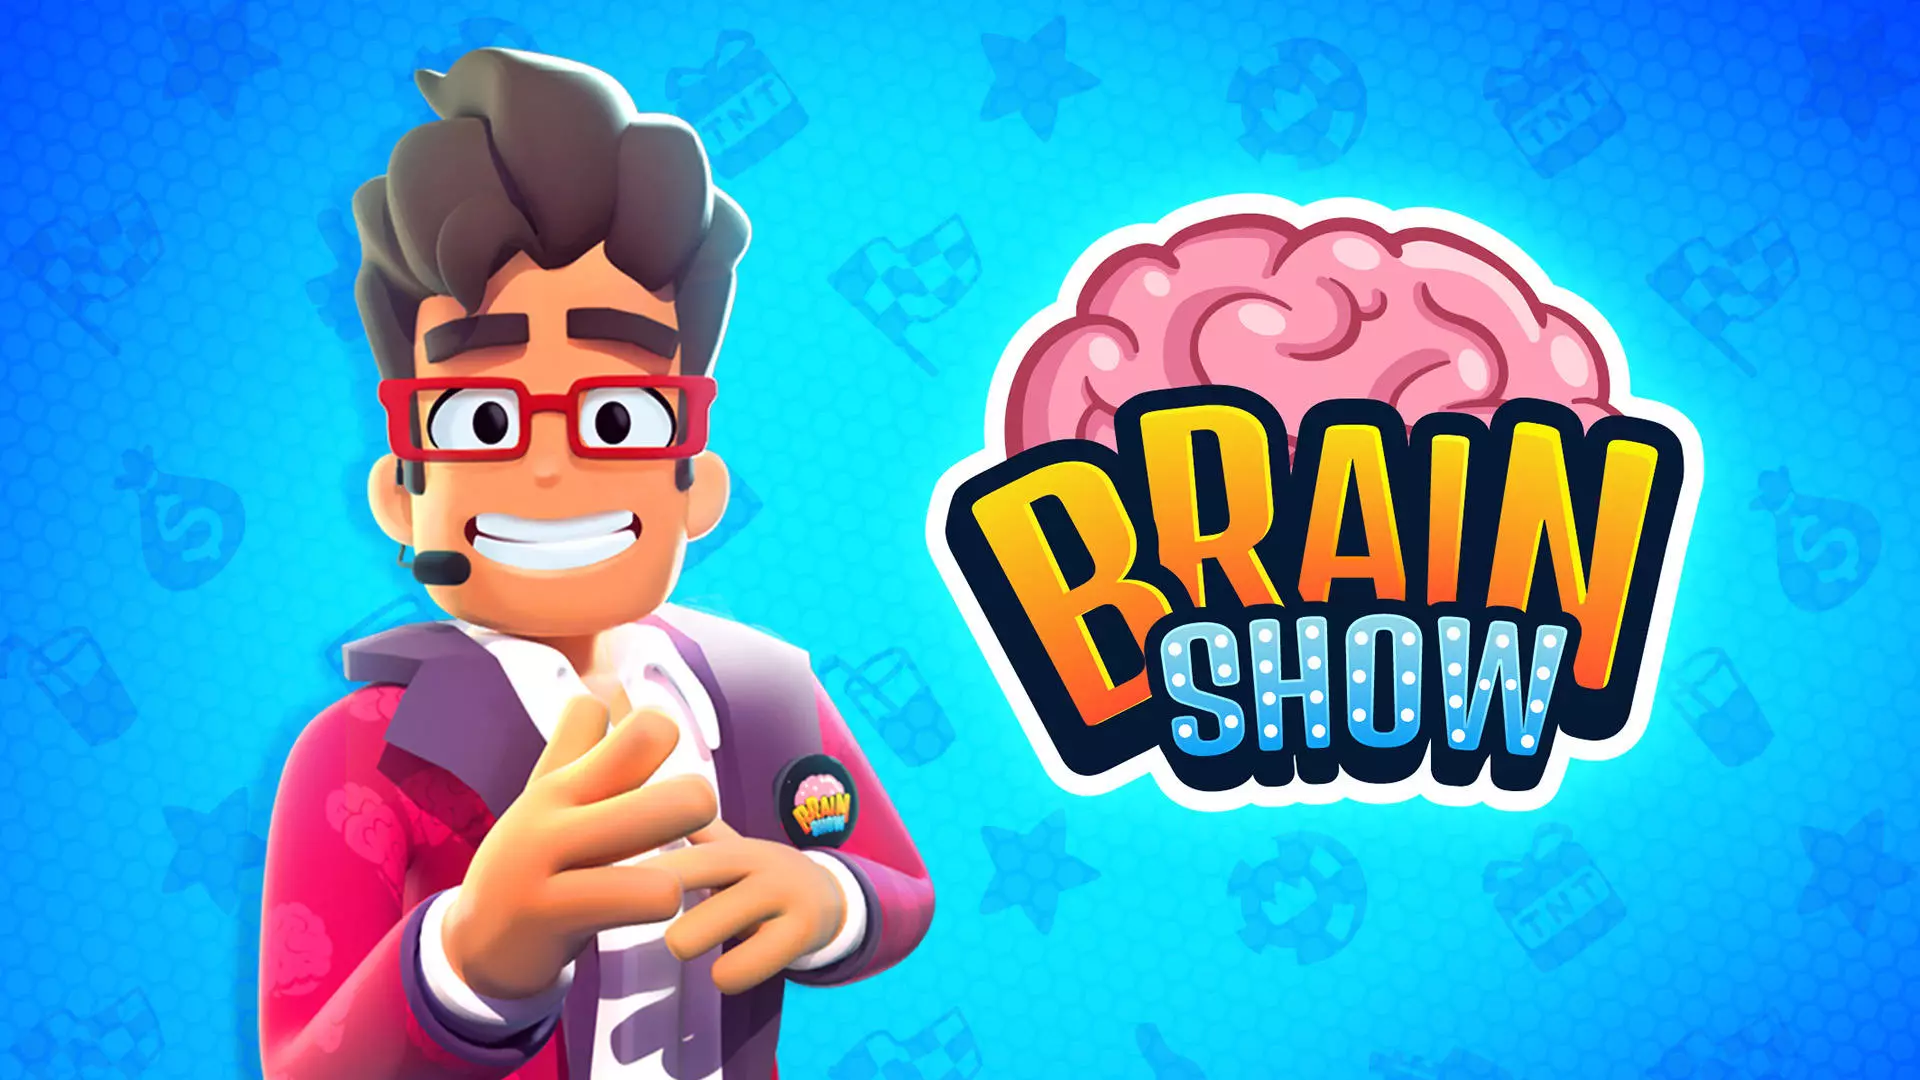 brainshow